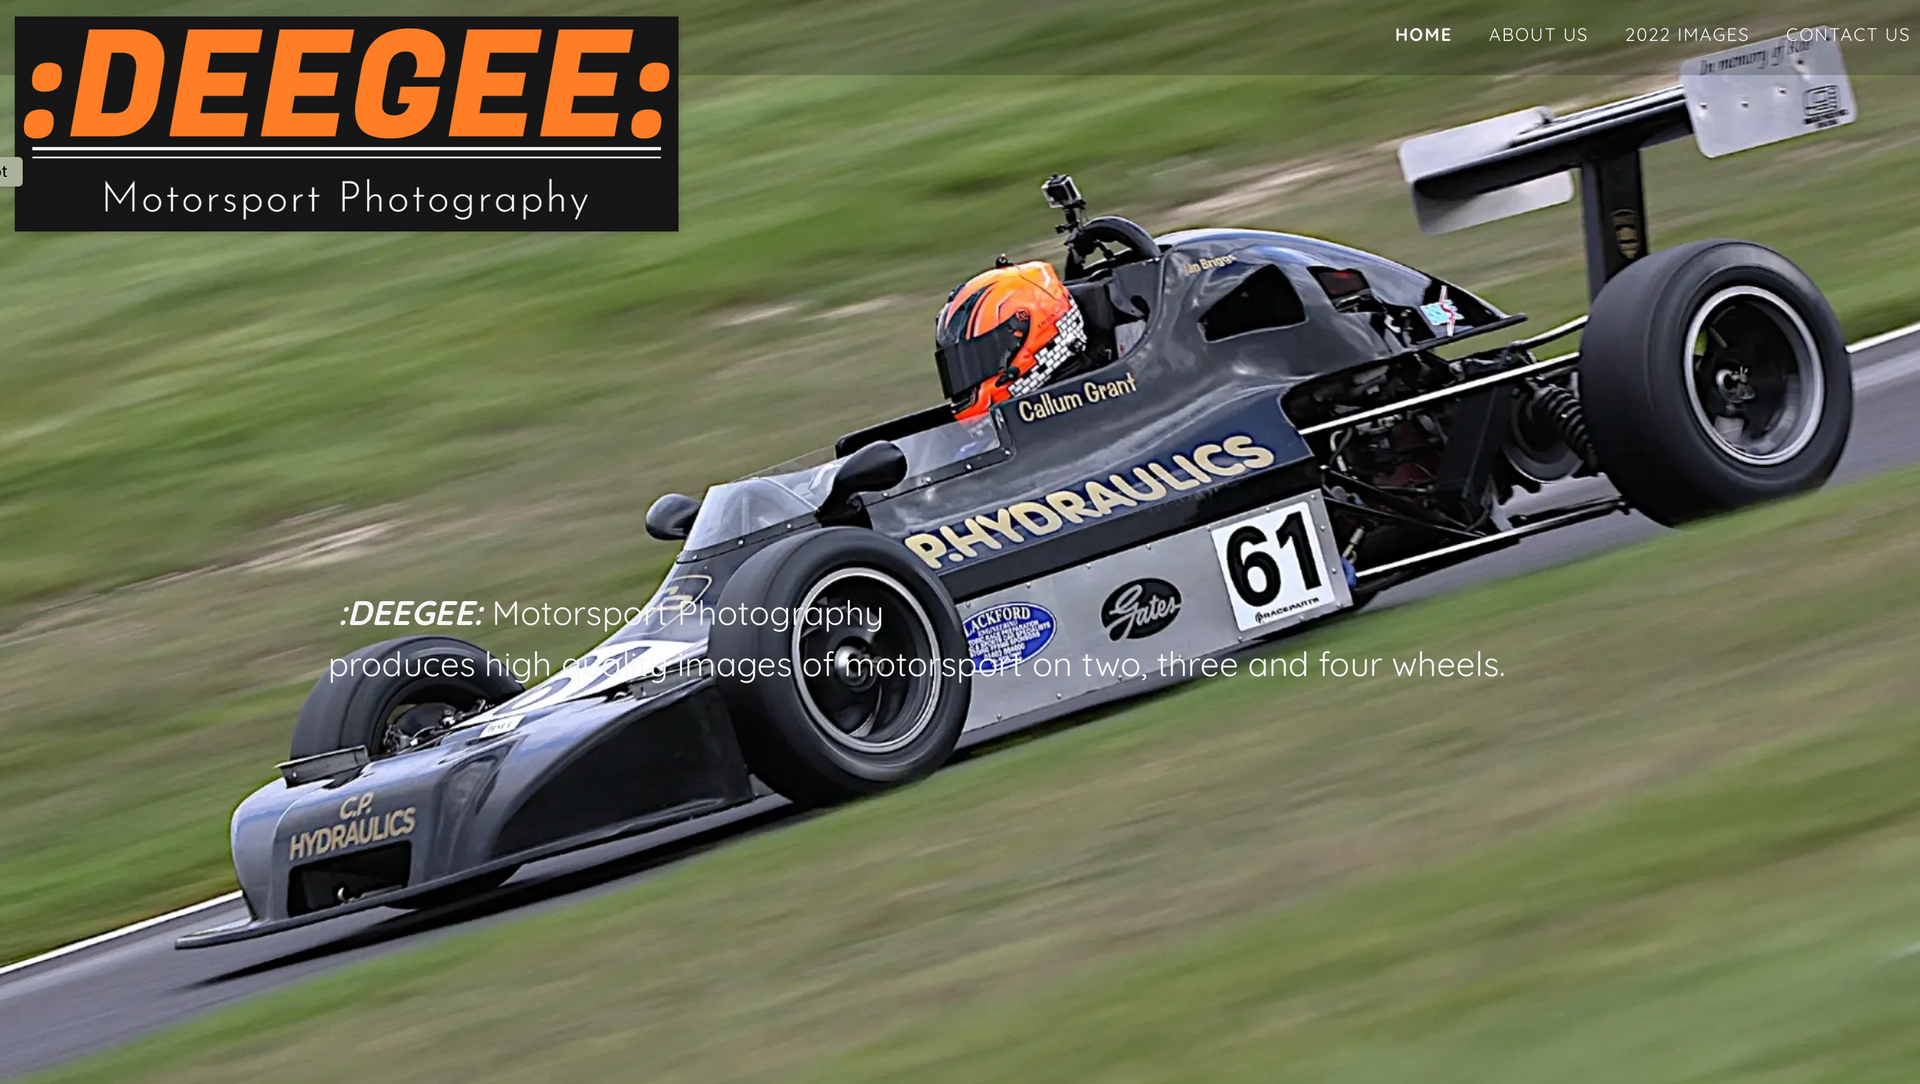 DEEGEE motorsport photography